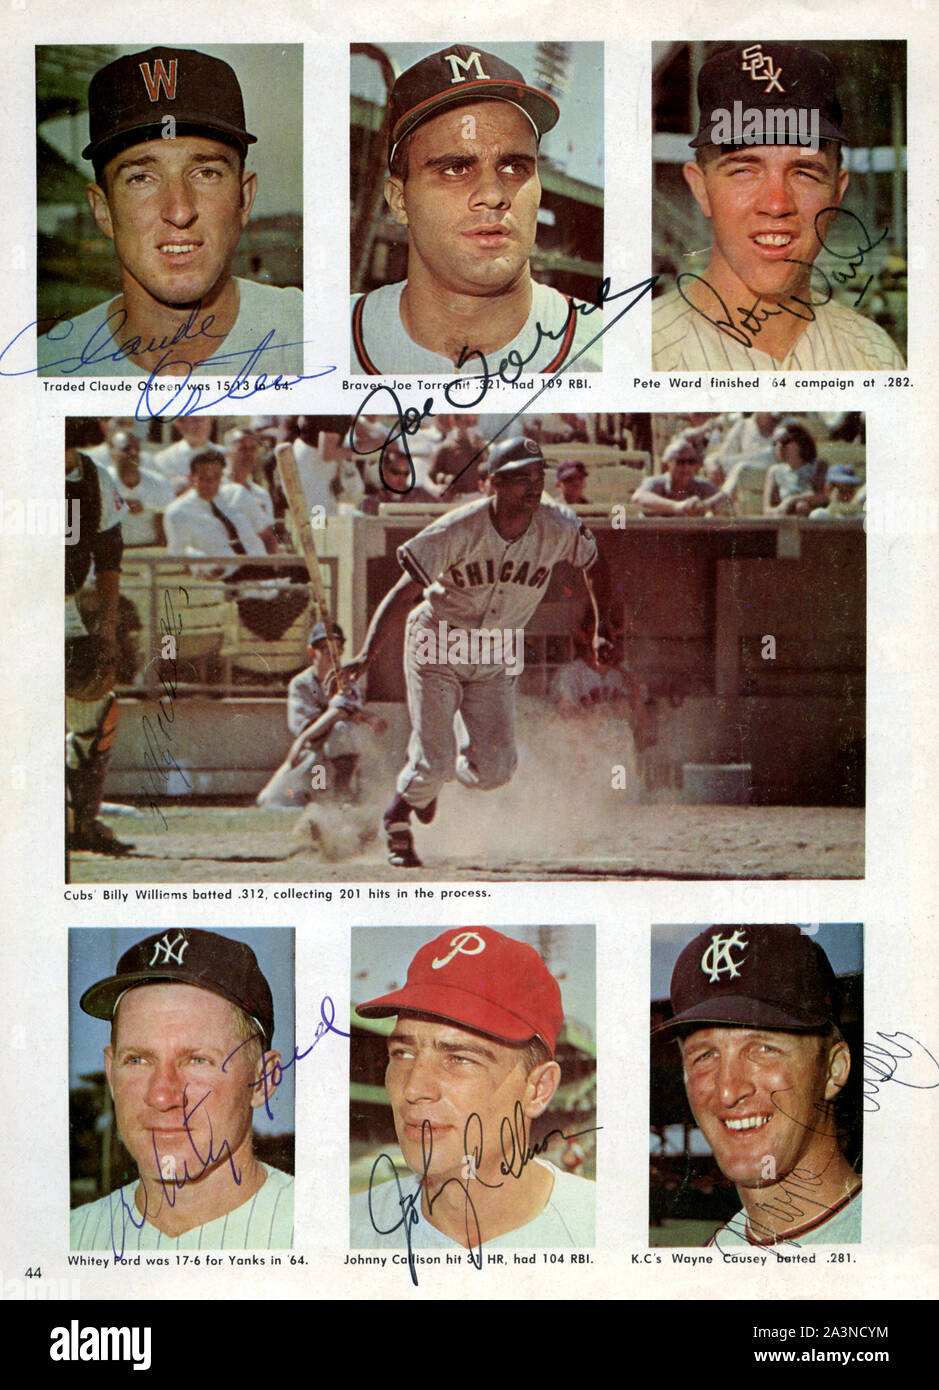 Une ère 1960 sport magazine page présentant star avec plusieurs joueurs de baseball des autographes y compris Hall of Famers Joe Torre et Blanc Ford. Banque D'Images